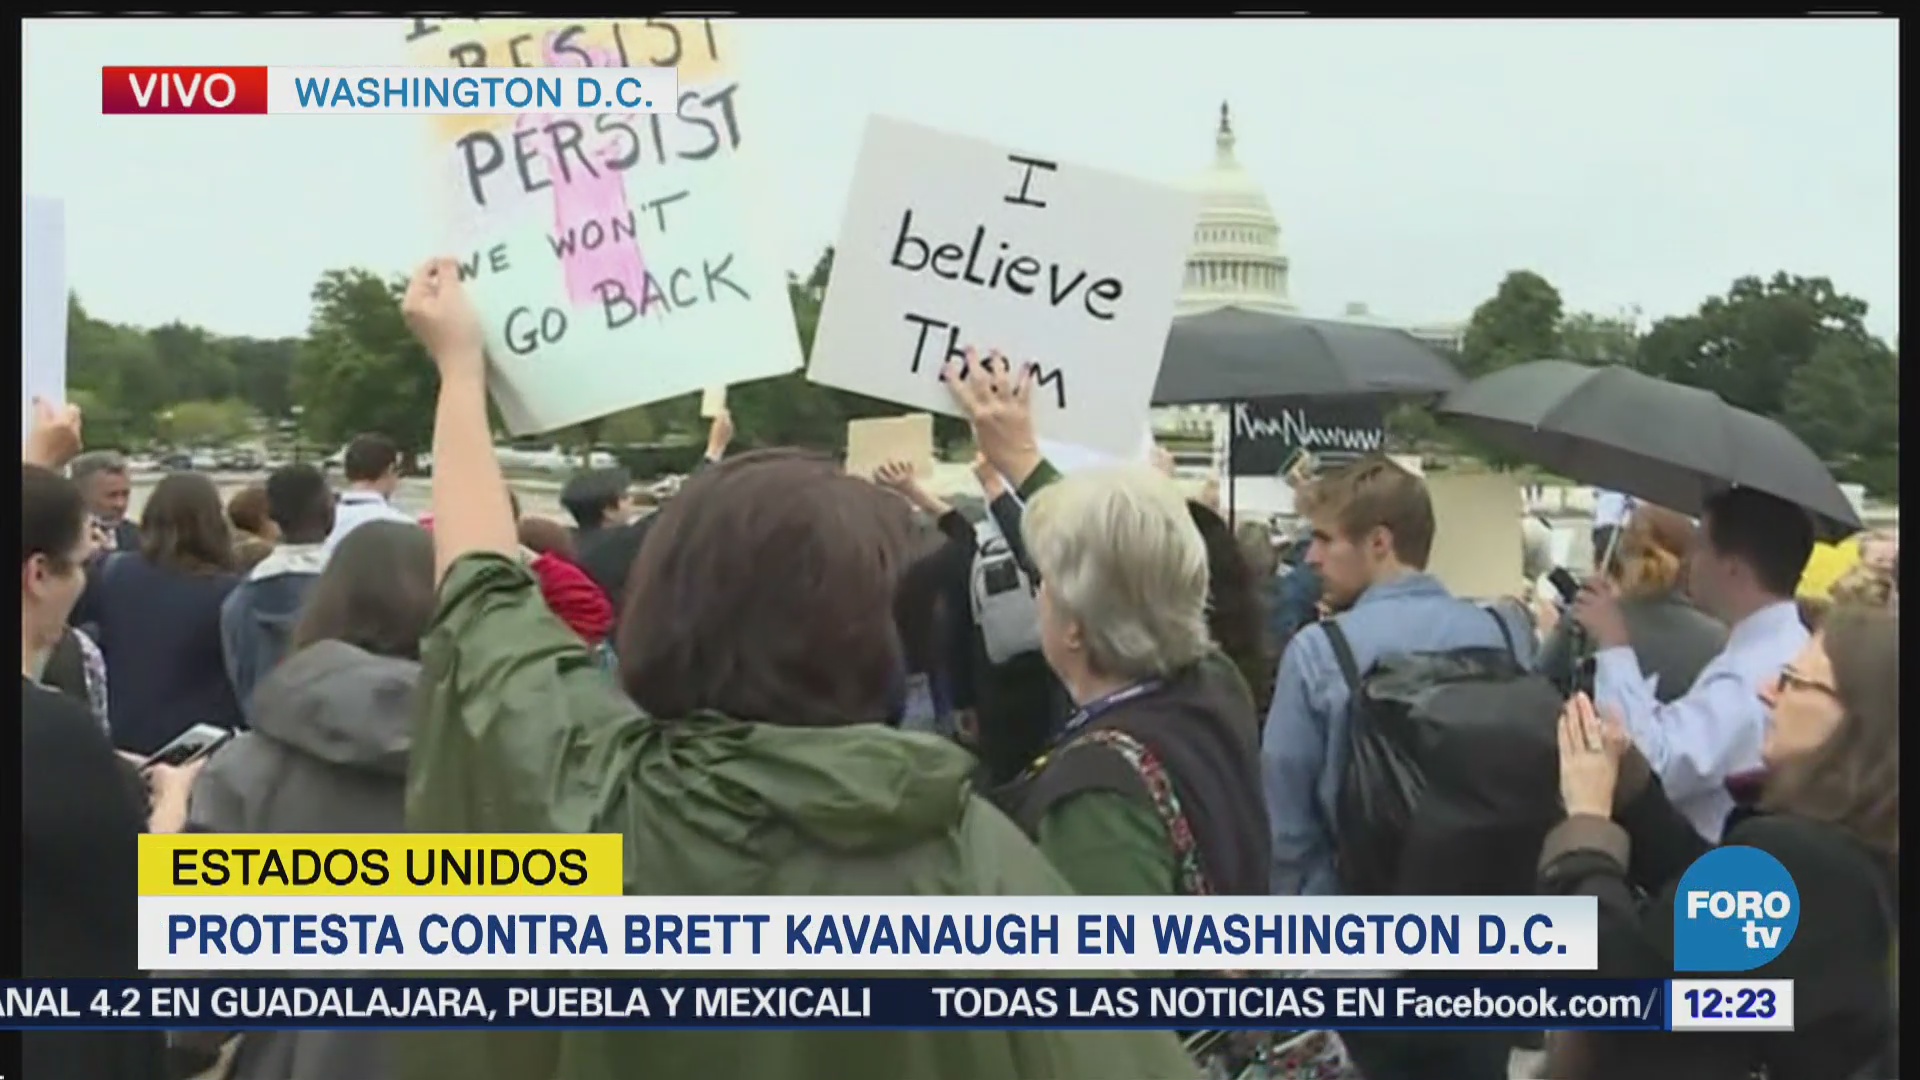 Protesta contra Brett Kavanaugh Washintong, Estados Unidos